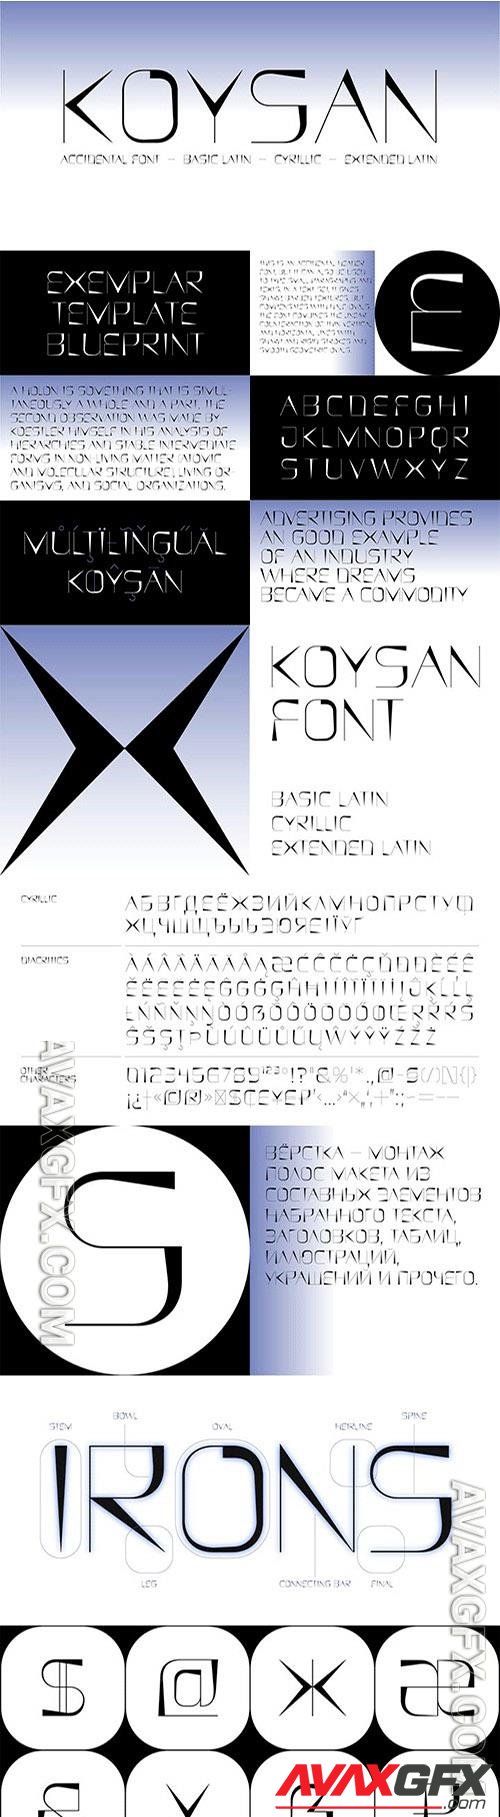 Koysan font